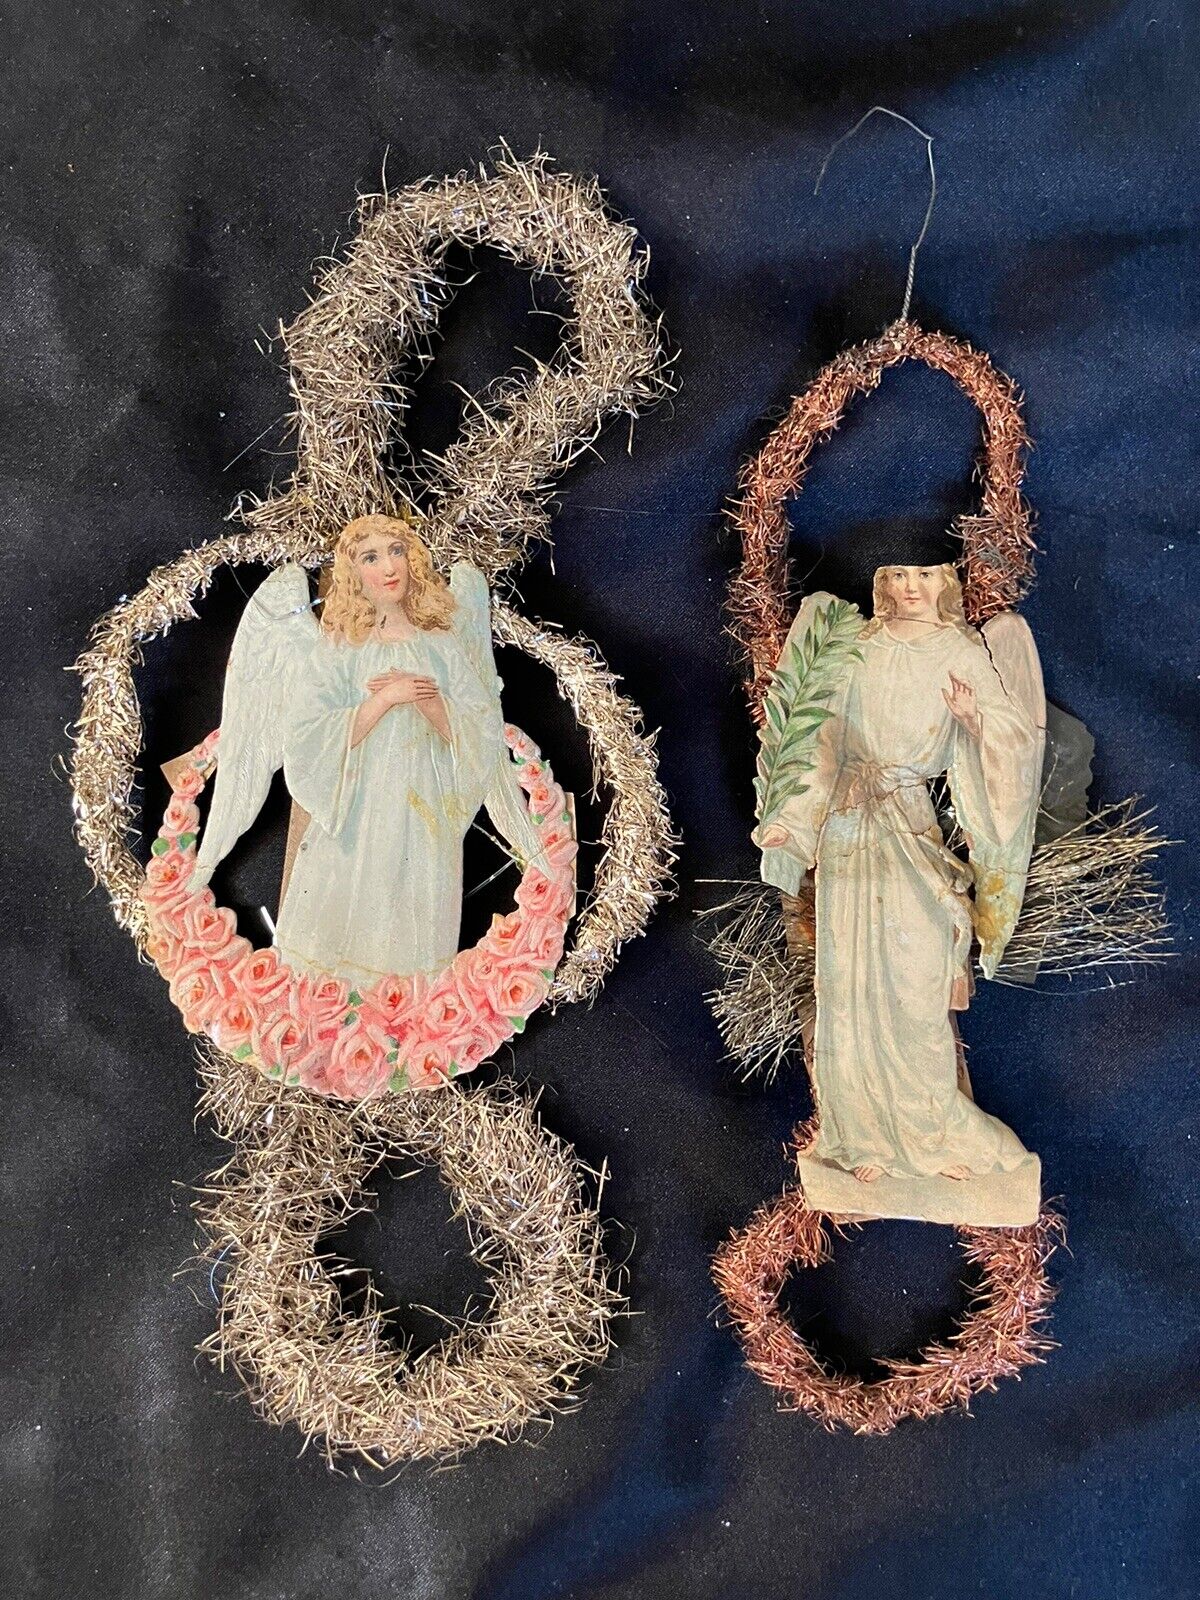 2 Antique Victorian Scrap Christmas Ornaments - 1800s